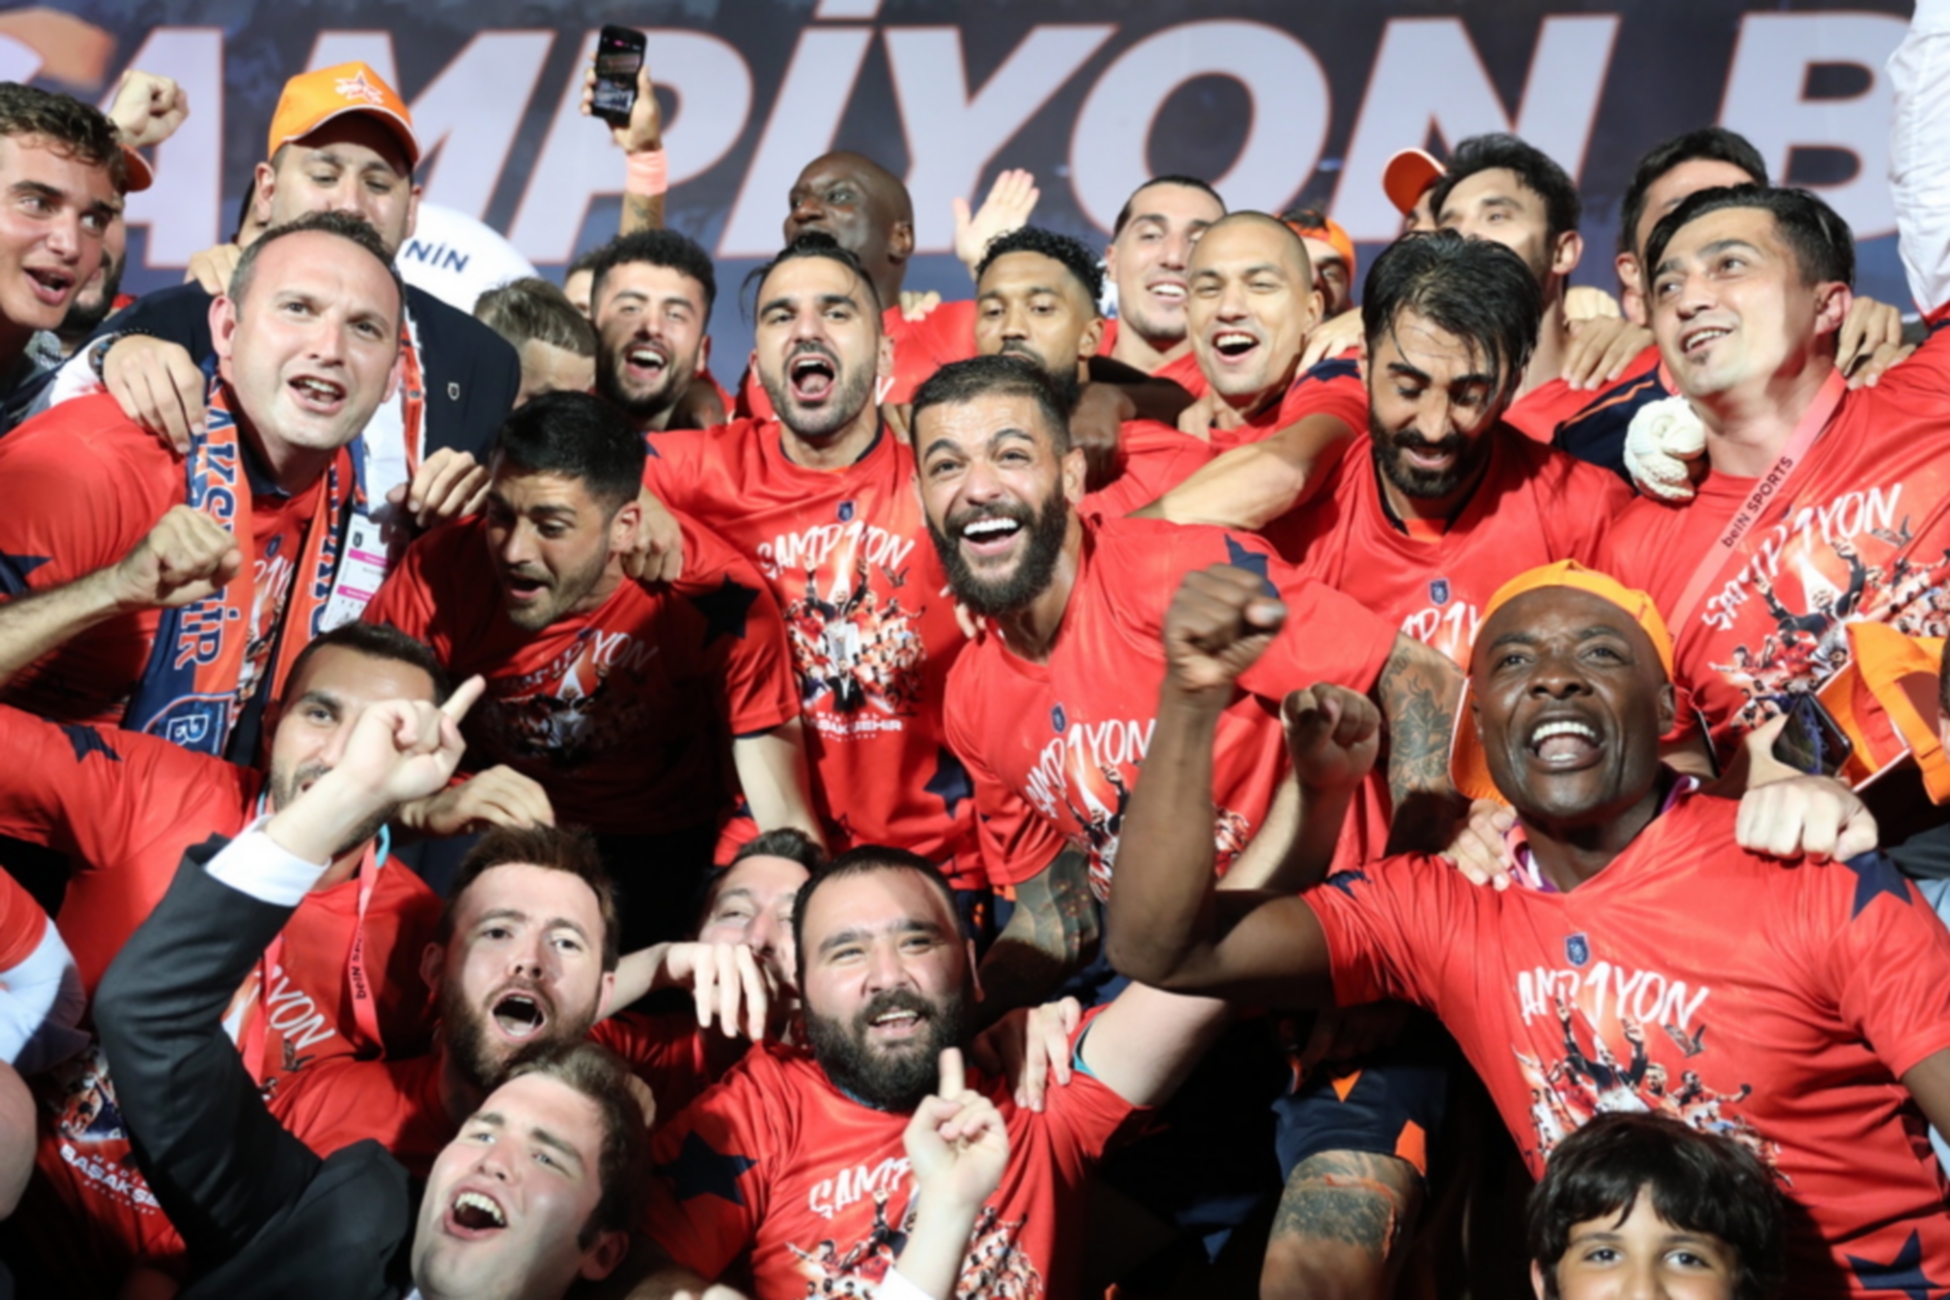 Τρομακτική εικόνα στην Τουρκία: Οπαδοί της Καϊσέρισπορ πηγαίνουν με χατζάρες στον τελικό του Κυπέλλου